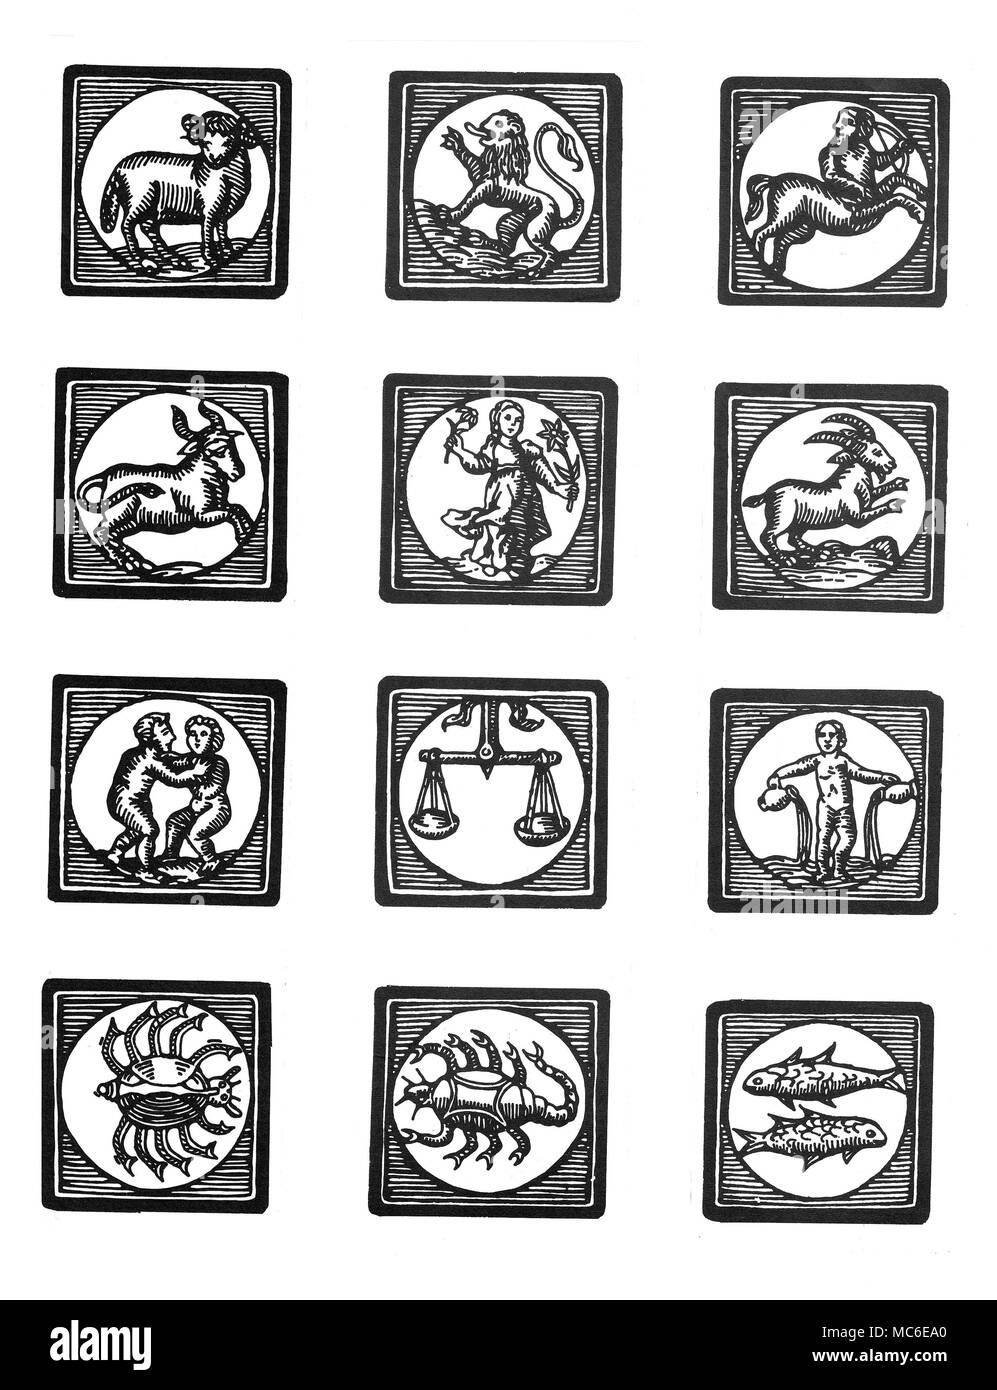 Astrologia dodici cartouches con le immagini dei segni zodiacali, da Ariete a Pesci. Xix secolo Foto Stock